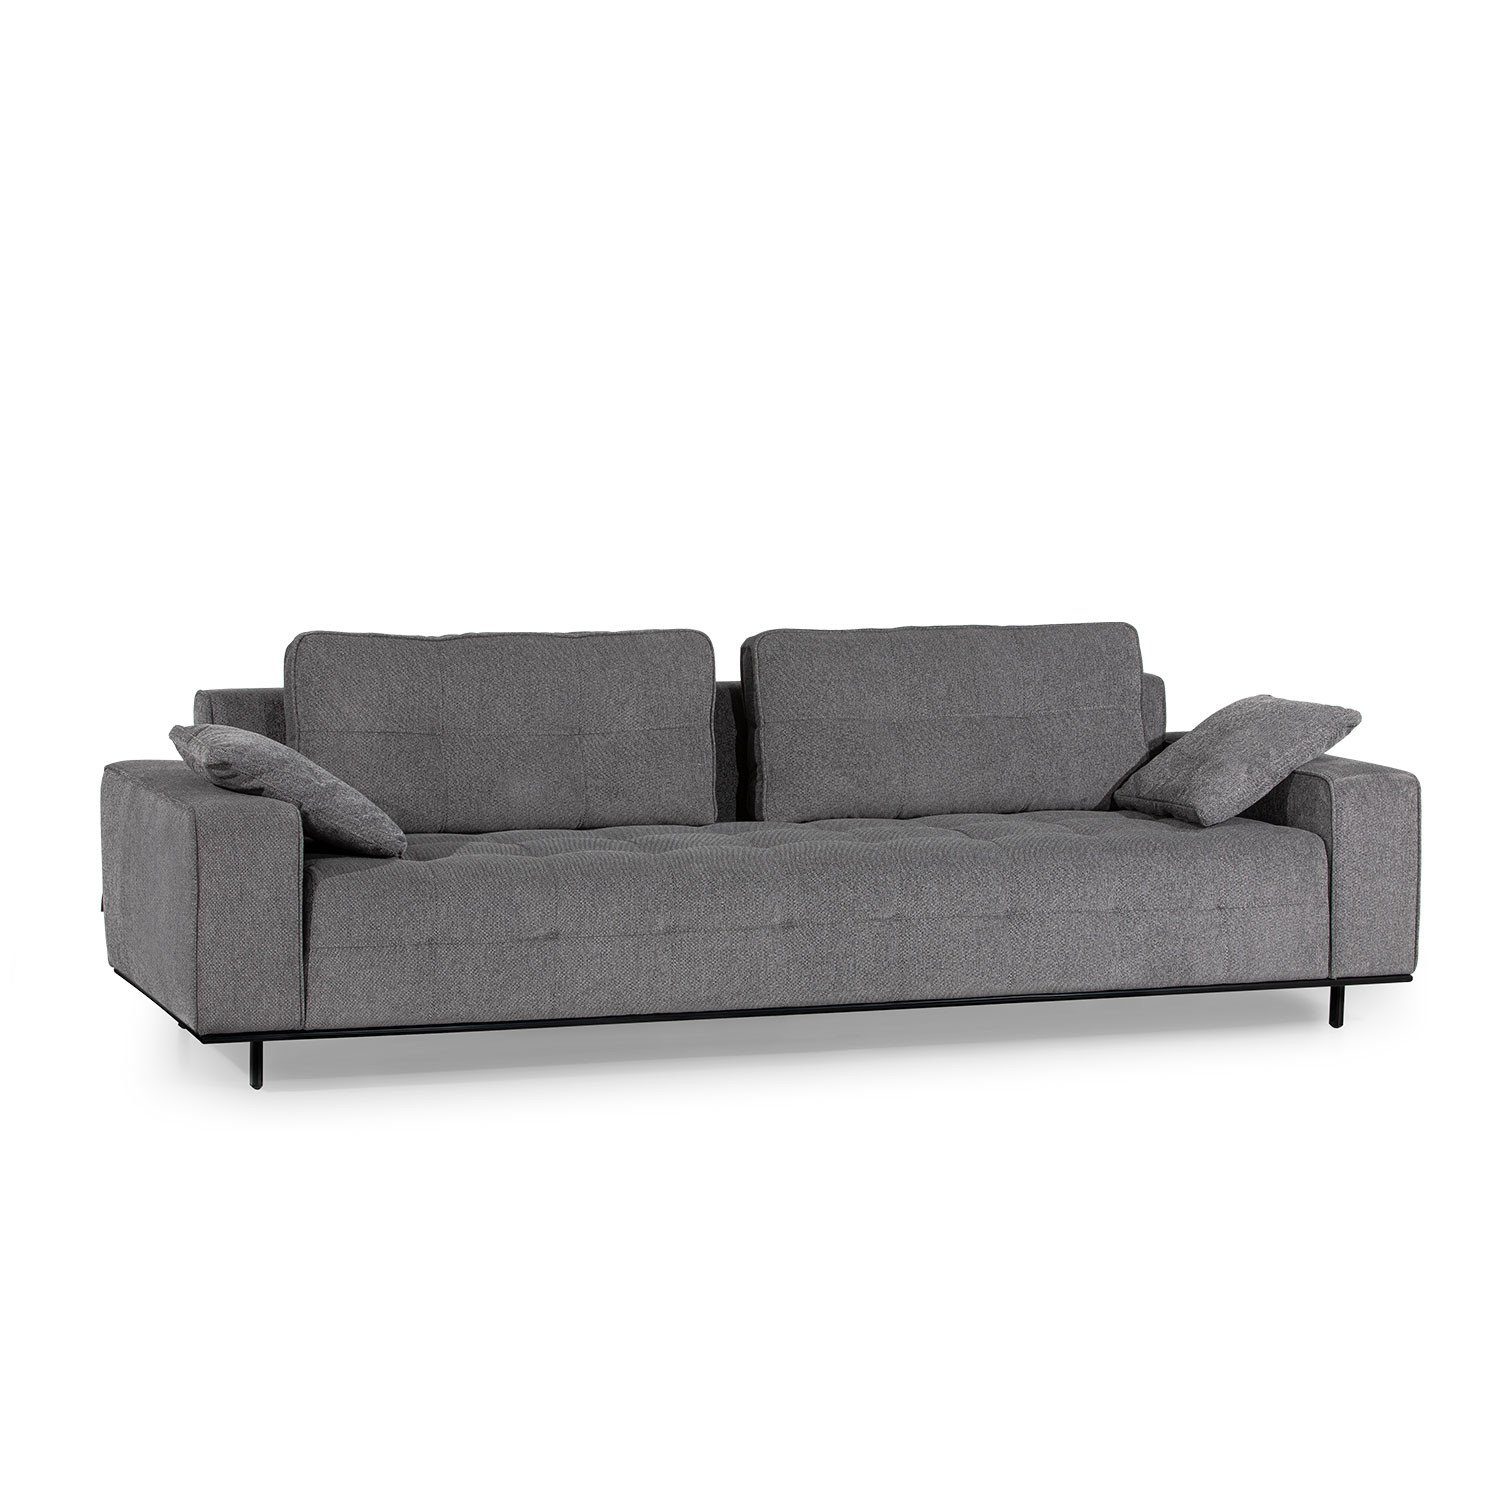 [Super niedriger Preis erzielt] Skye Decor Sofa NDS1505-4-Sitz-Sofa